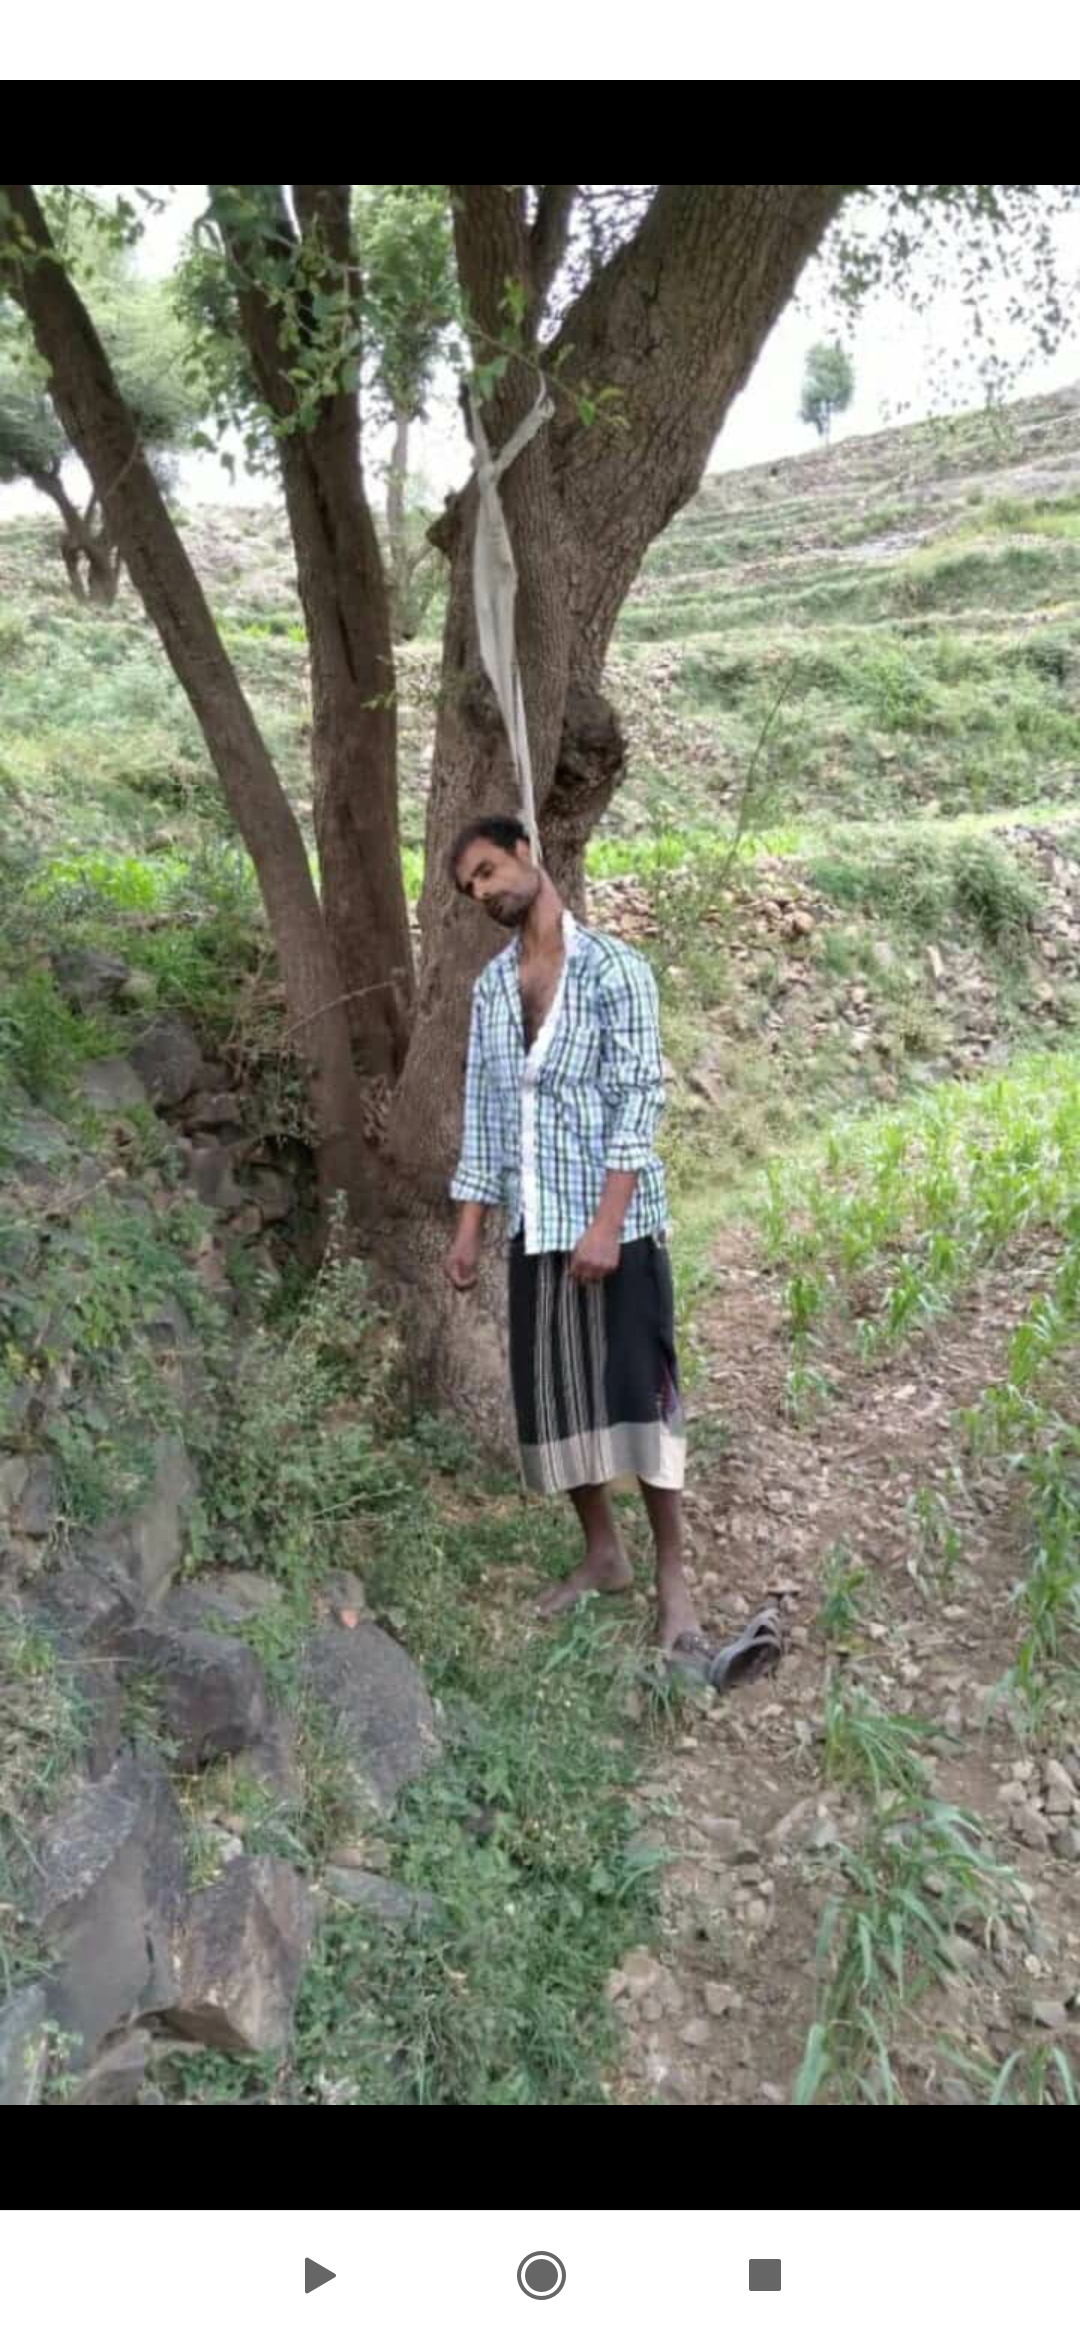 شاهد صورة المواطن اليمني الذي عُثر عليه مشنوقا على جذع شجرة ! 